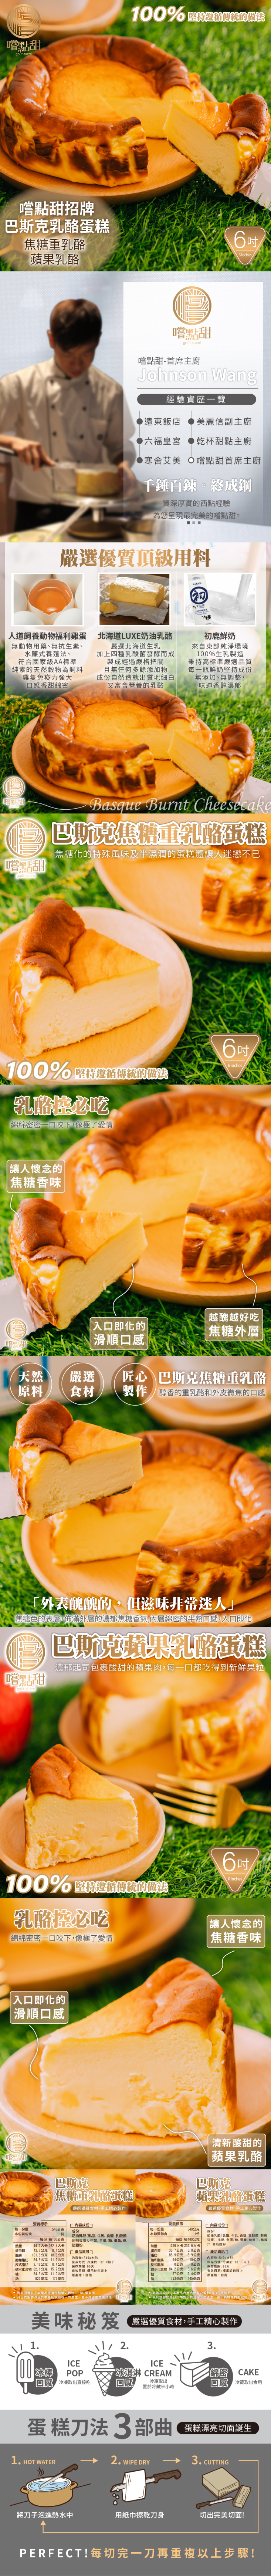       【嚐點甜】巴斯克蘋果乳酪蛋糕 x2個(6吋/540g)